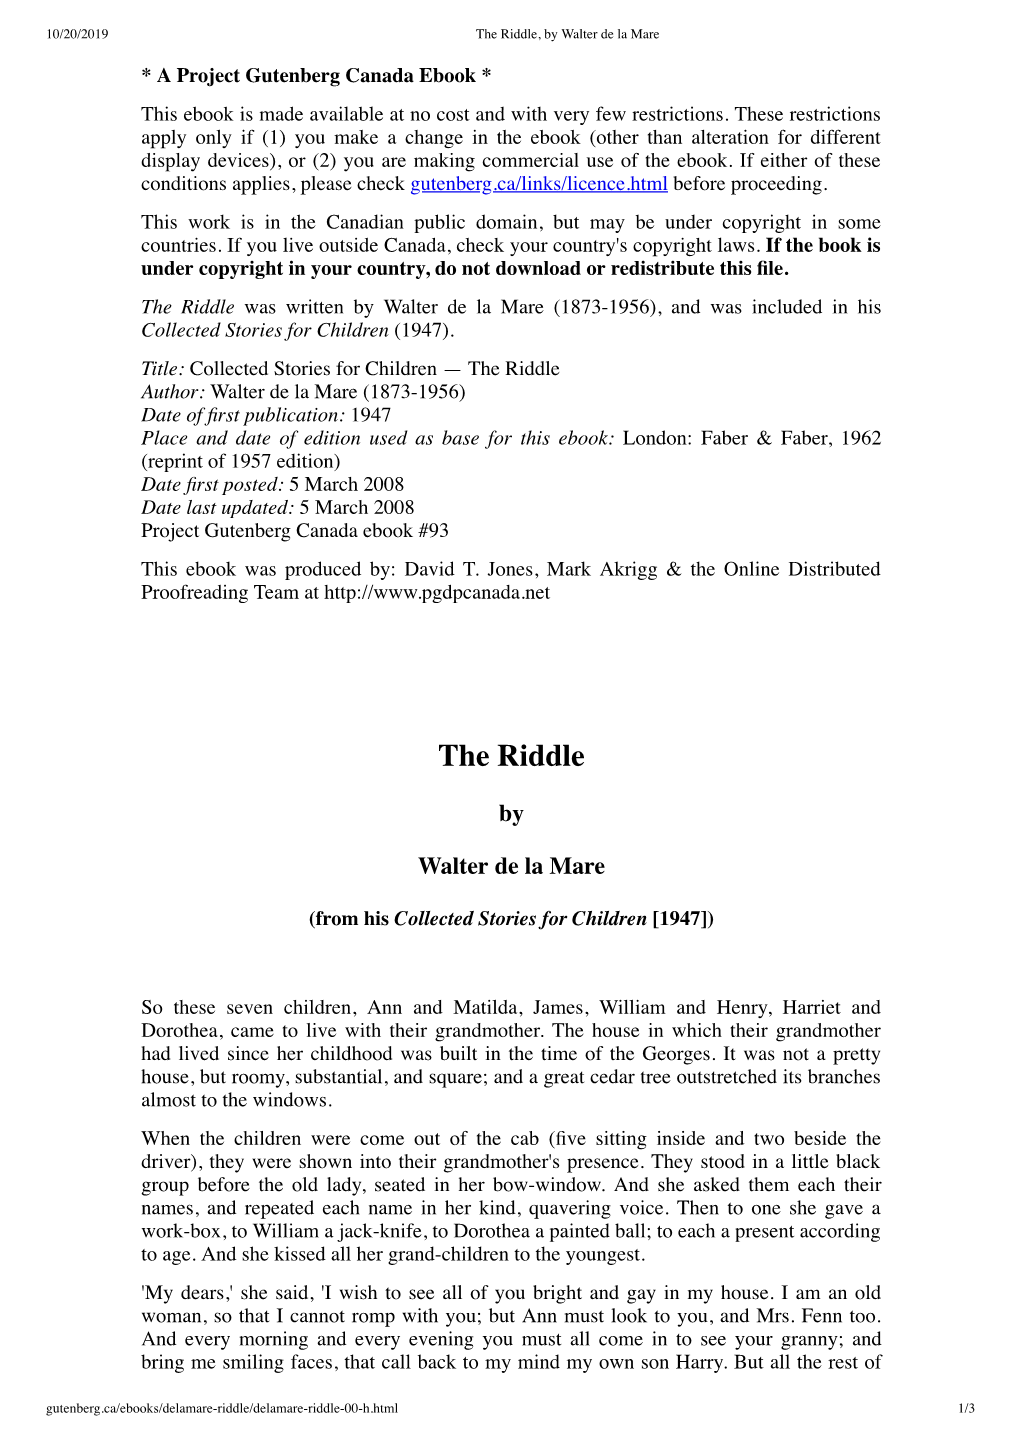 The Riddle, by Walter De La Mare